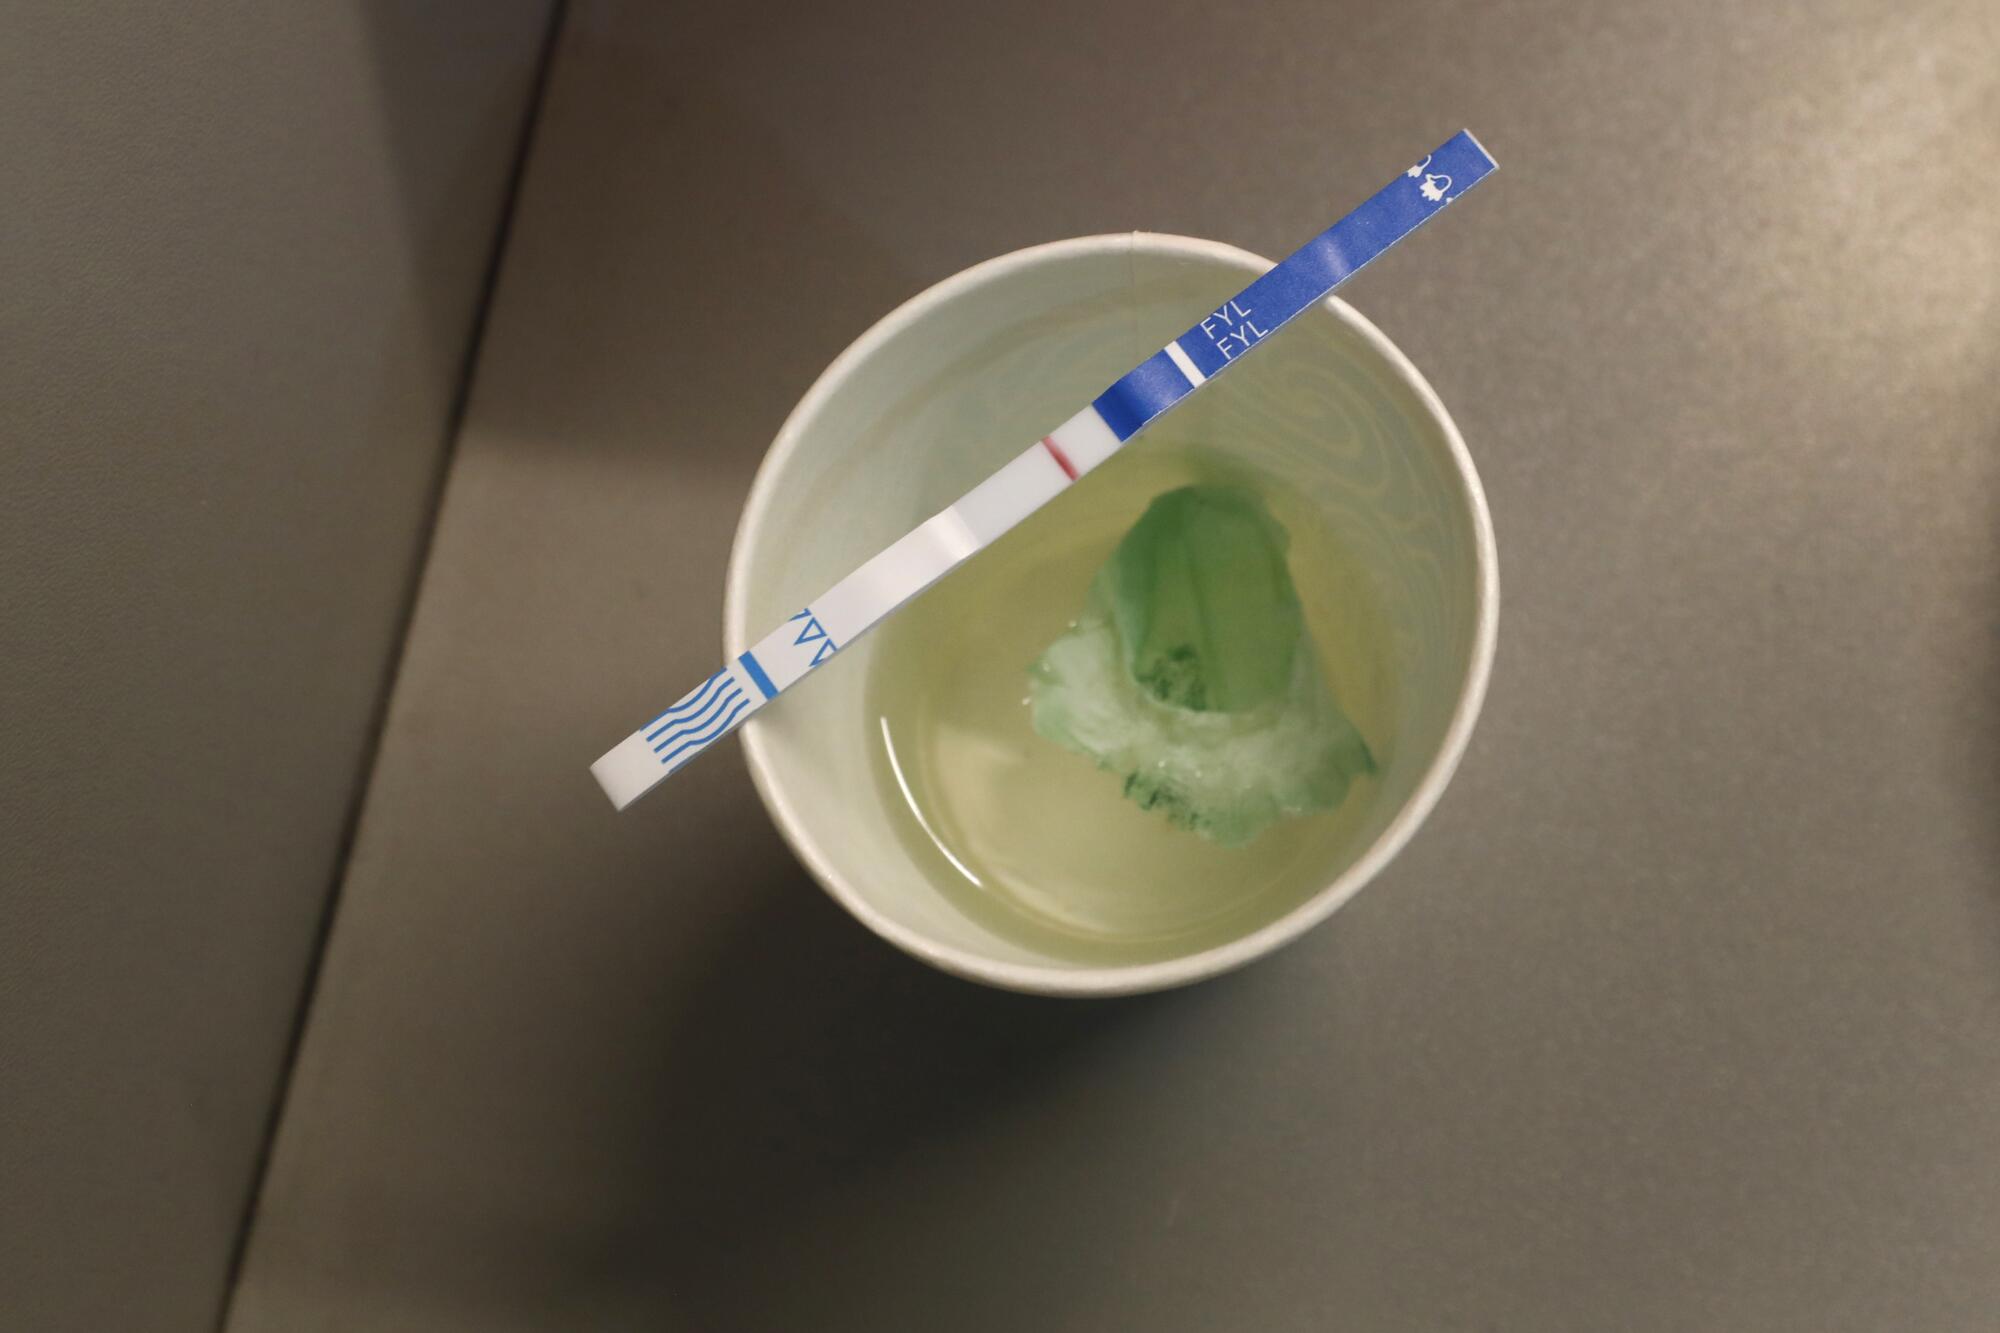 Una tira reactiva descansa sobre un vaso de líquido transparente con una sustancia verde